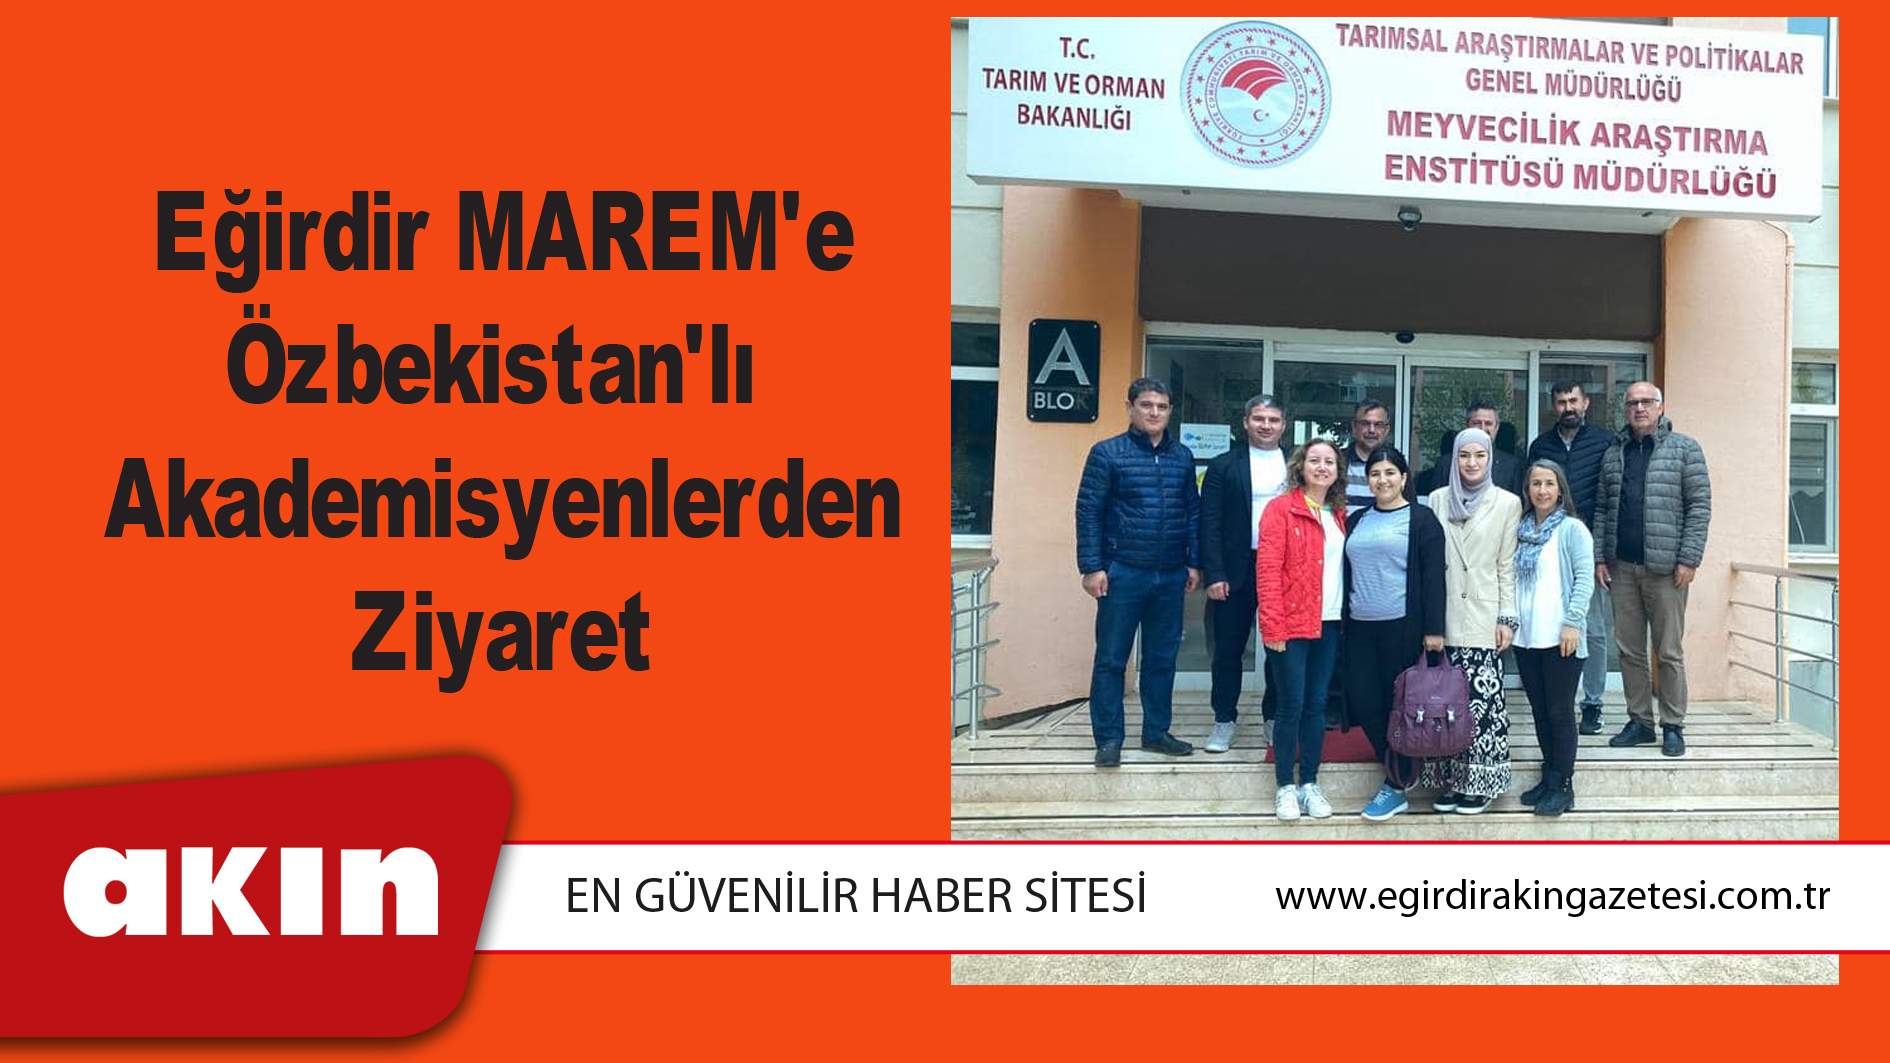 Eğirdir MAREM'e Özbekistan'lı Akademisyenlerden Ziyaret